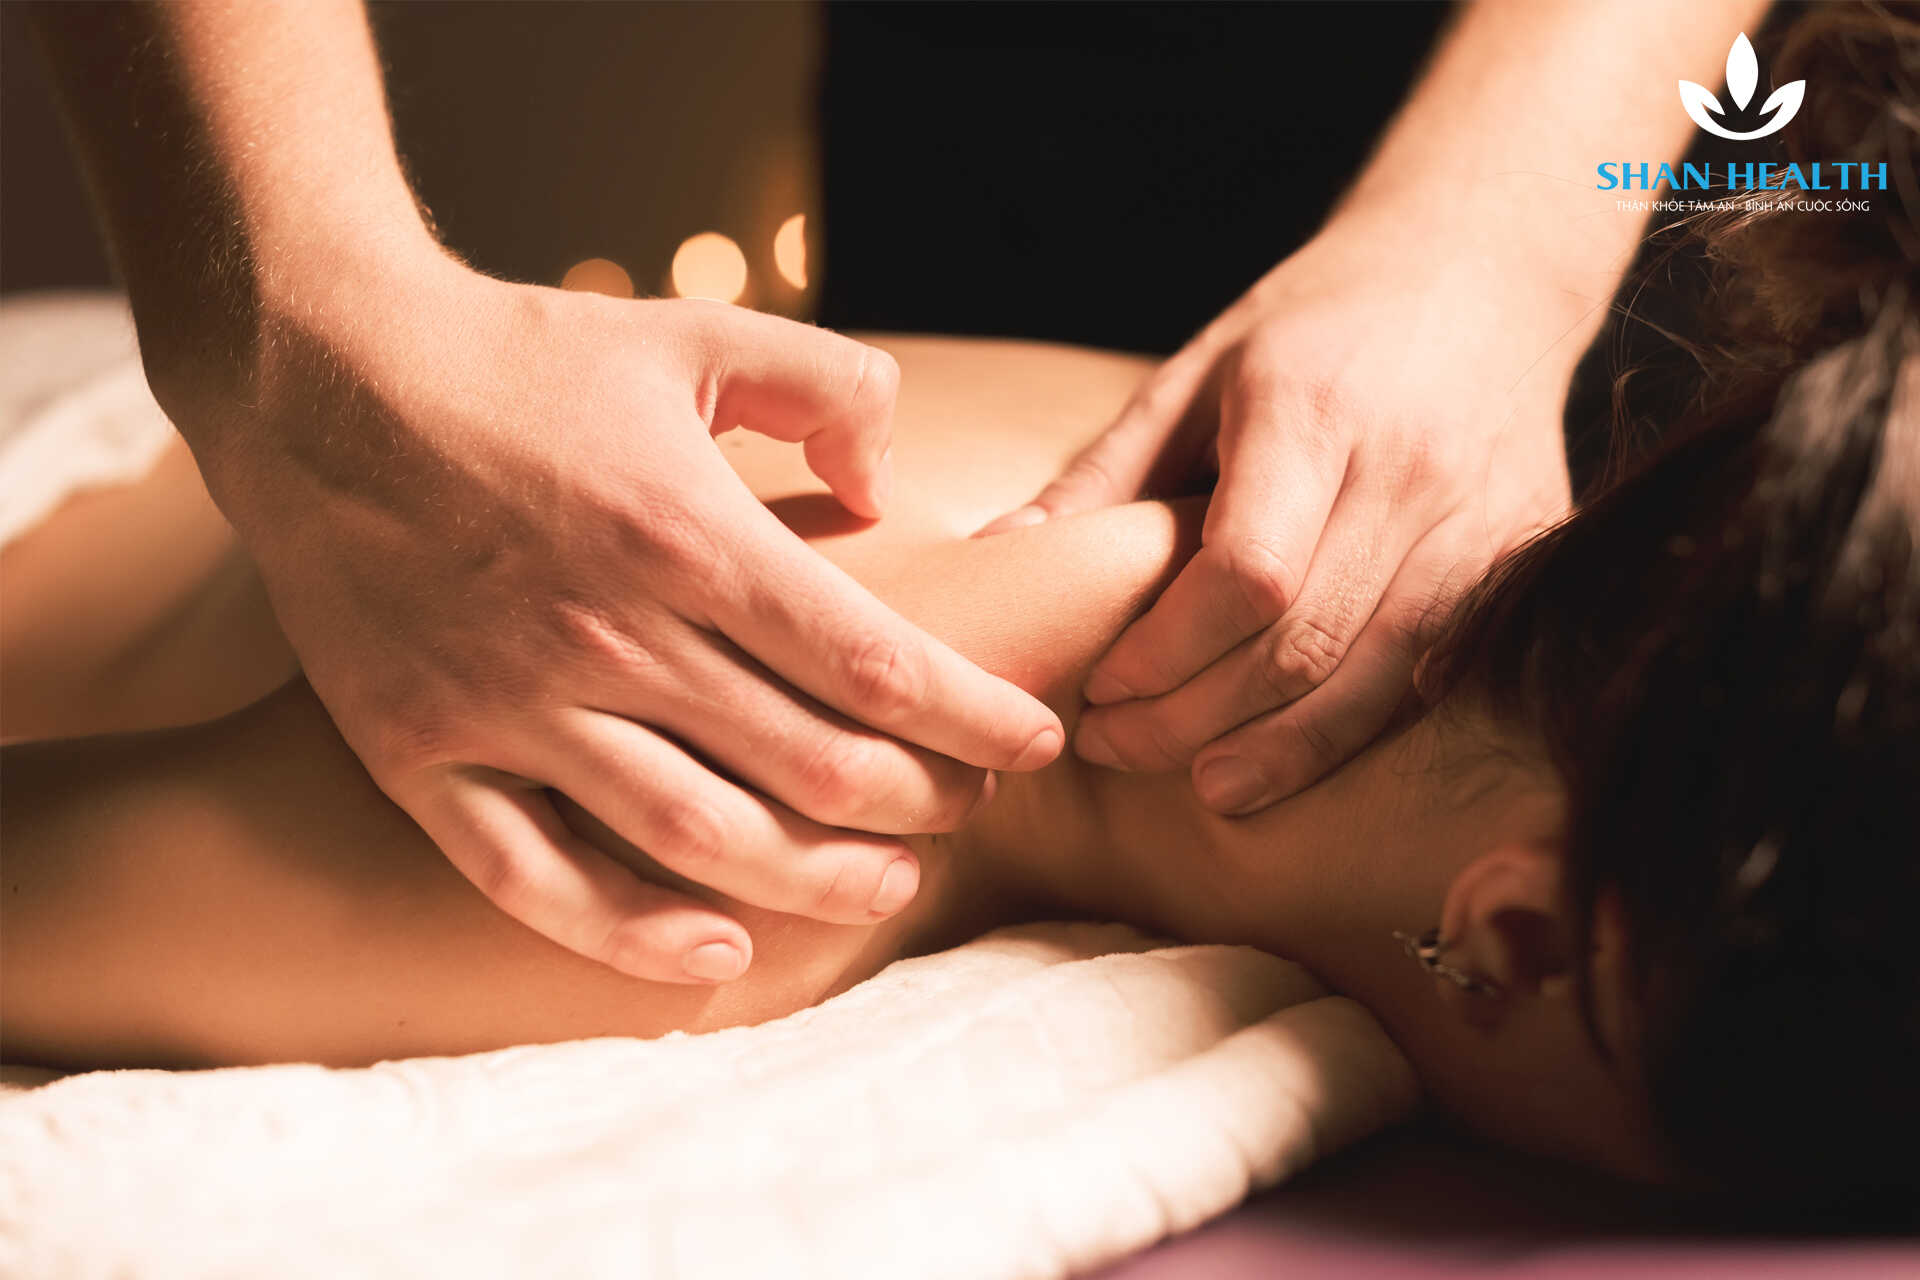 Massage trị liệu cổ vai gáy tại Gò Vấp - Shan Health có gì nổi bật?